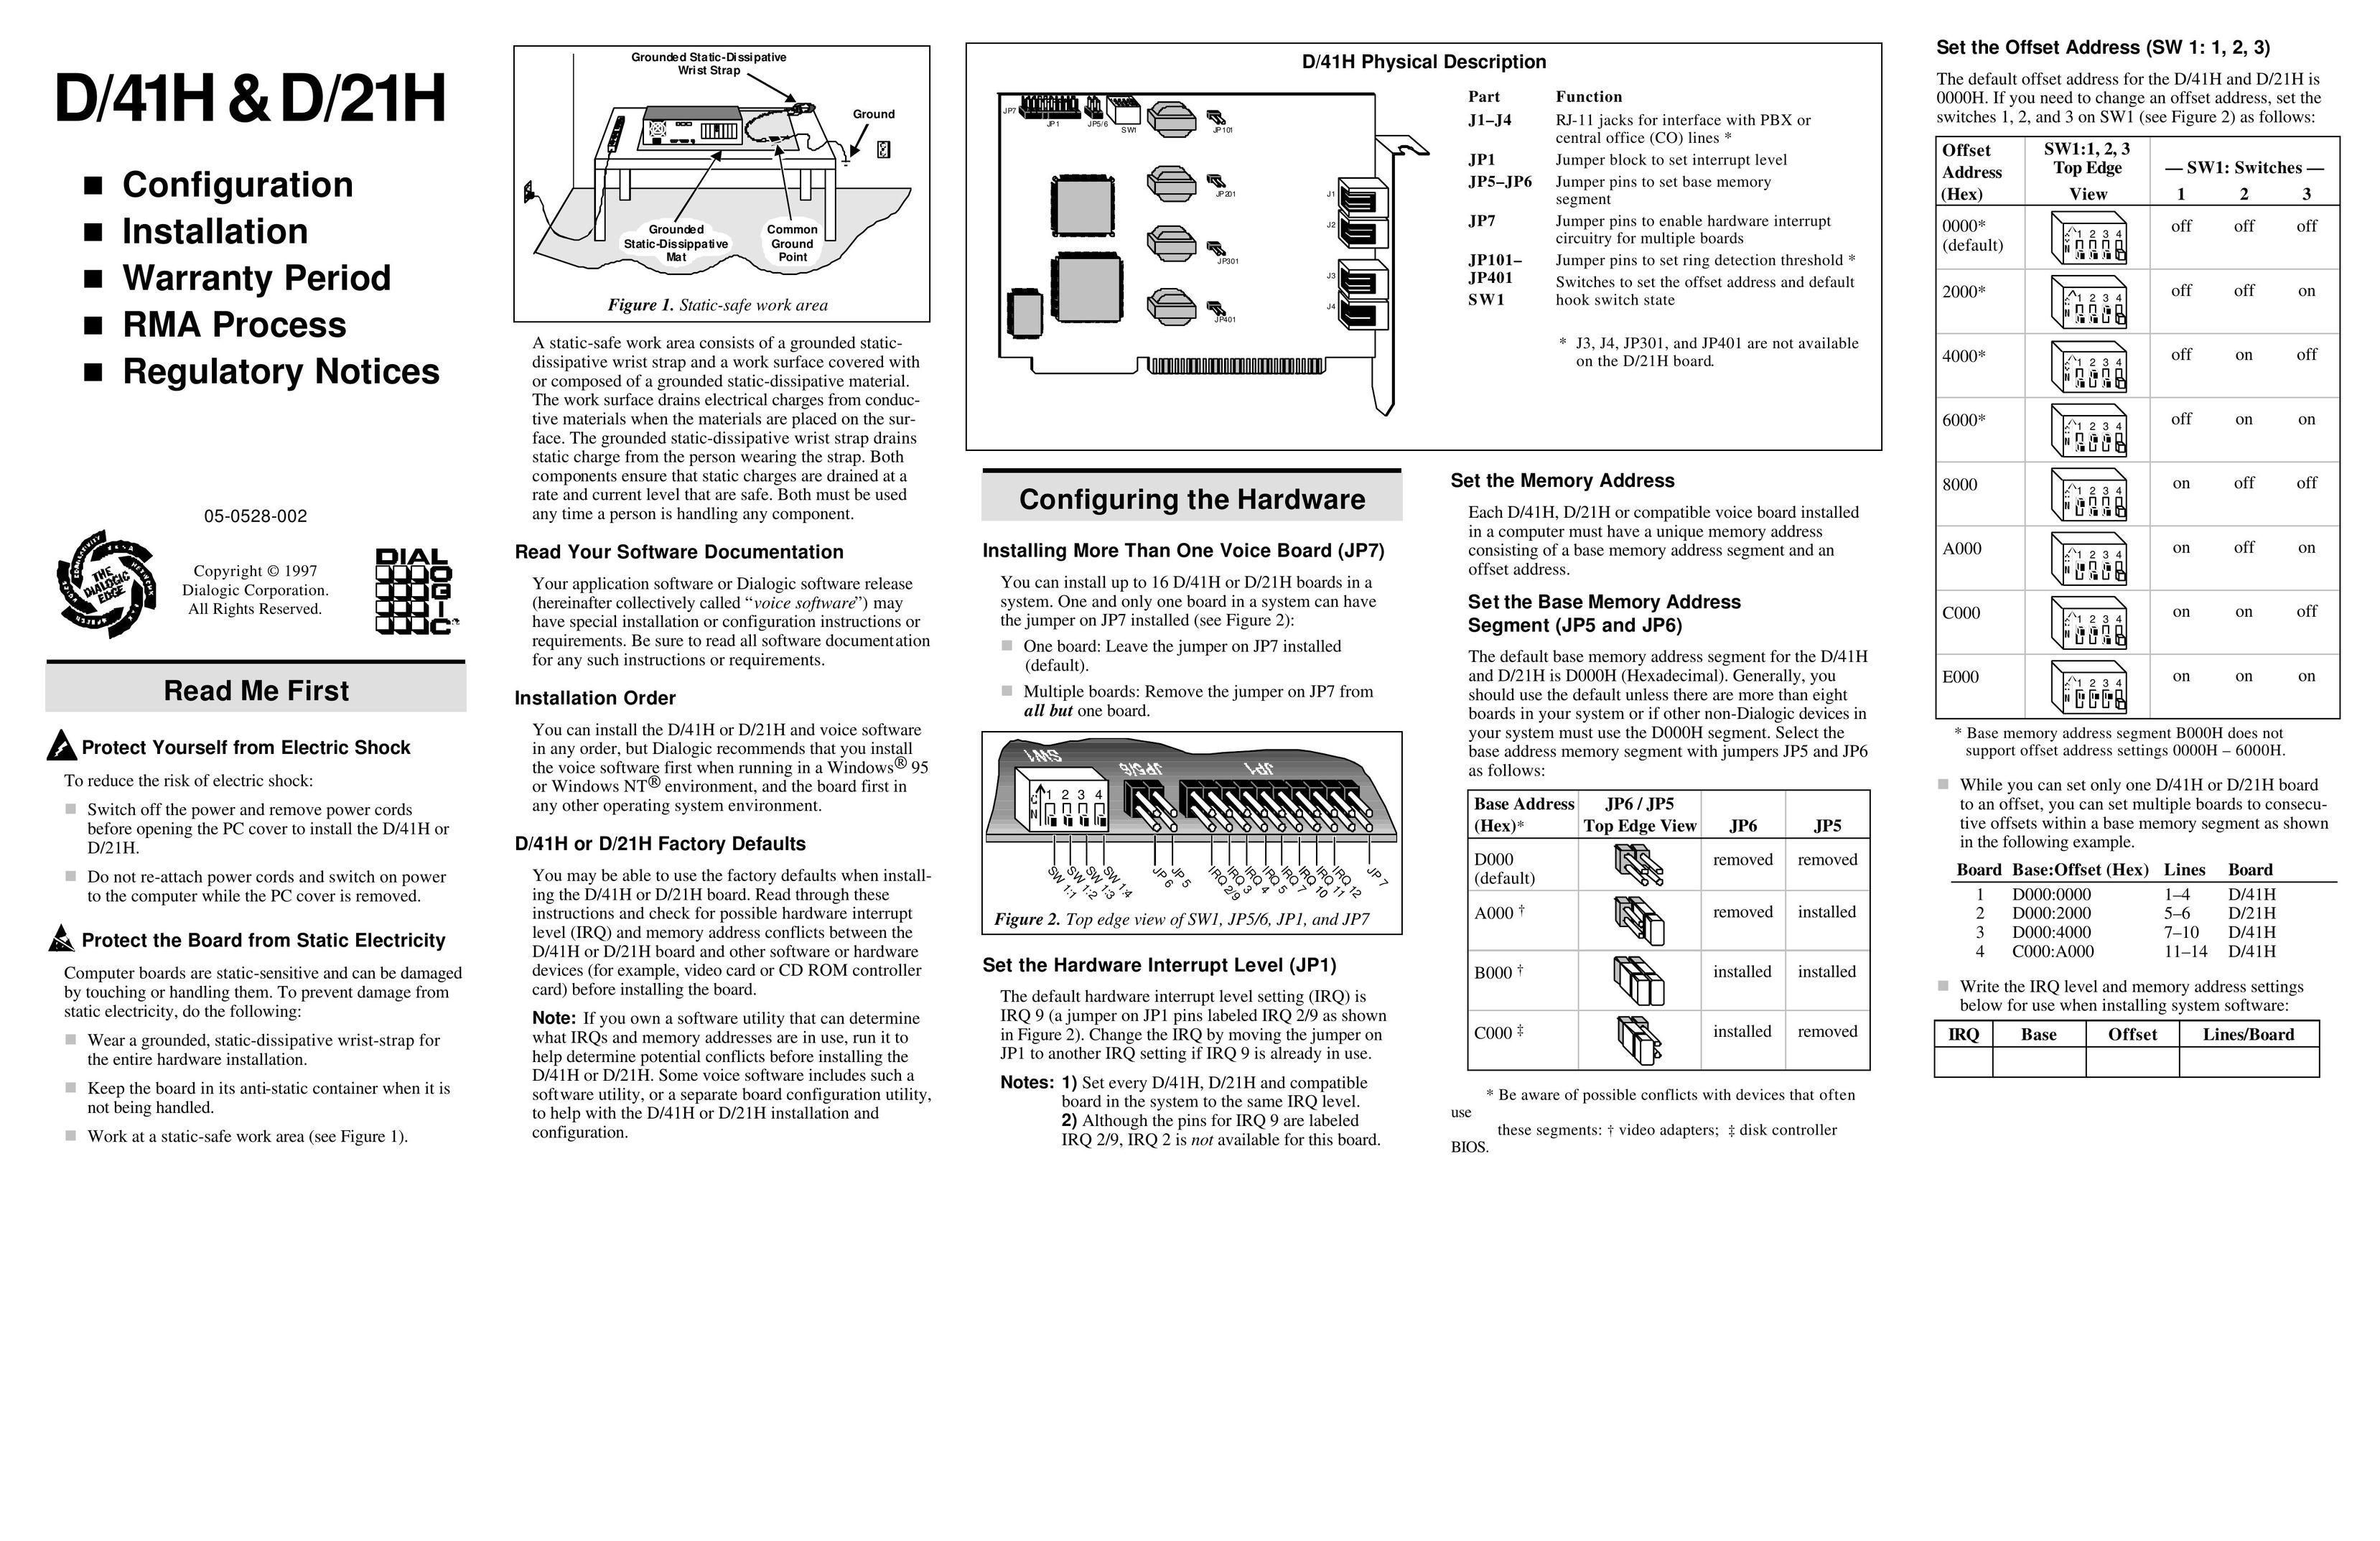 Dialogic D/41H Computer Hardware User Manual